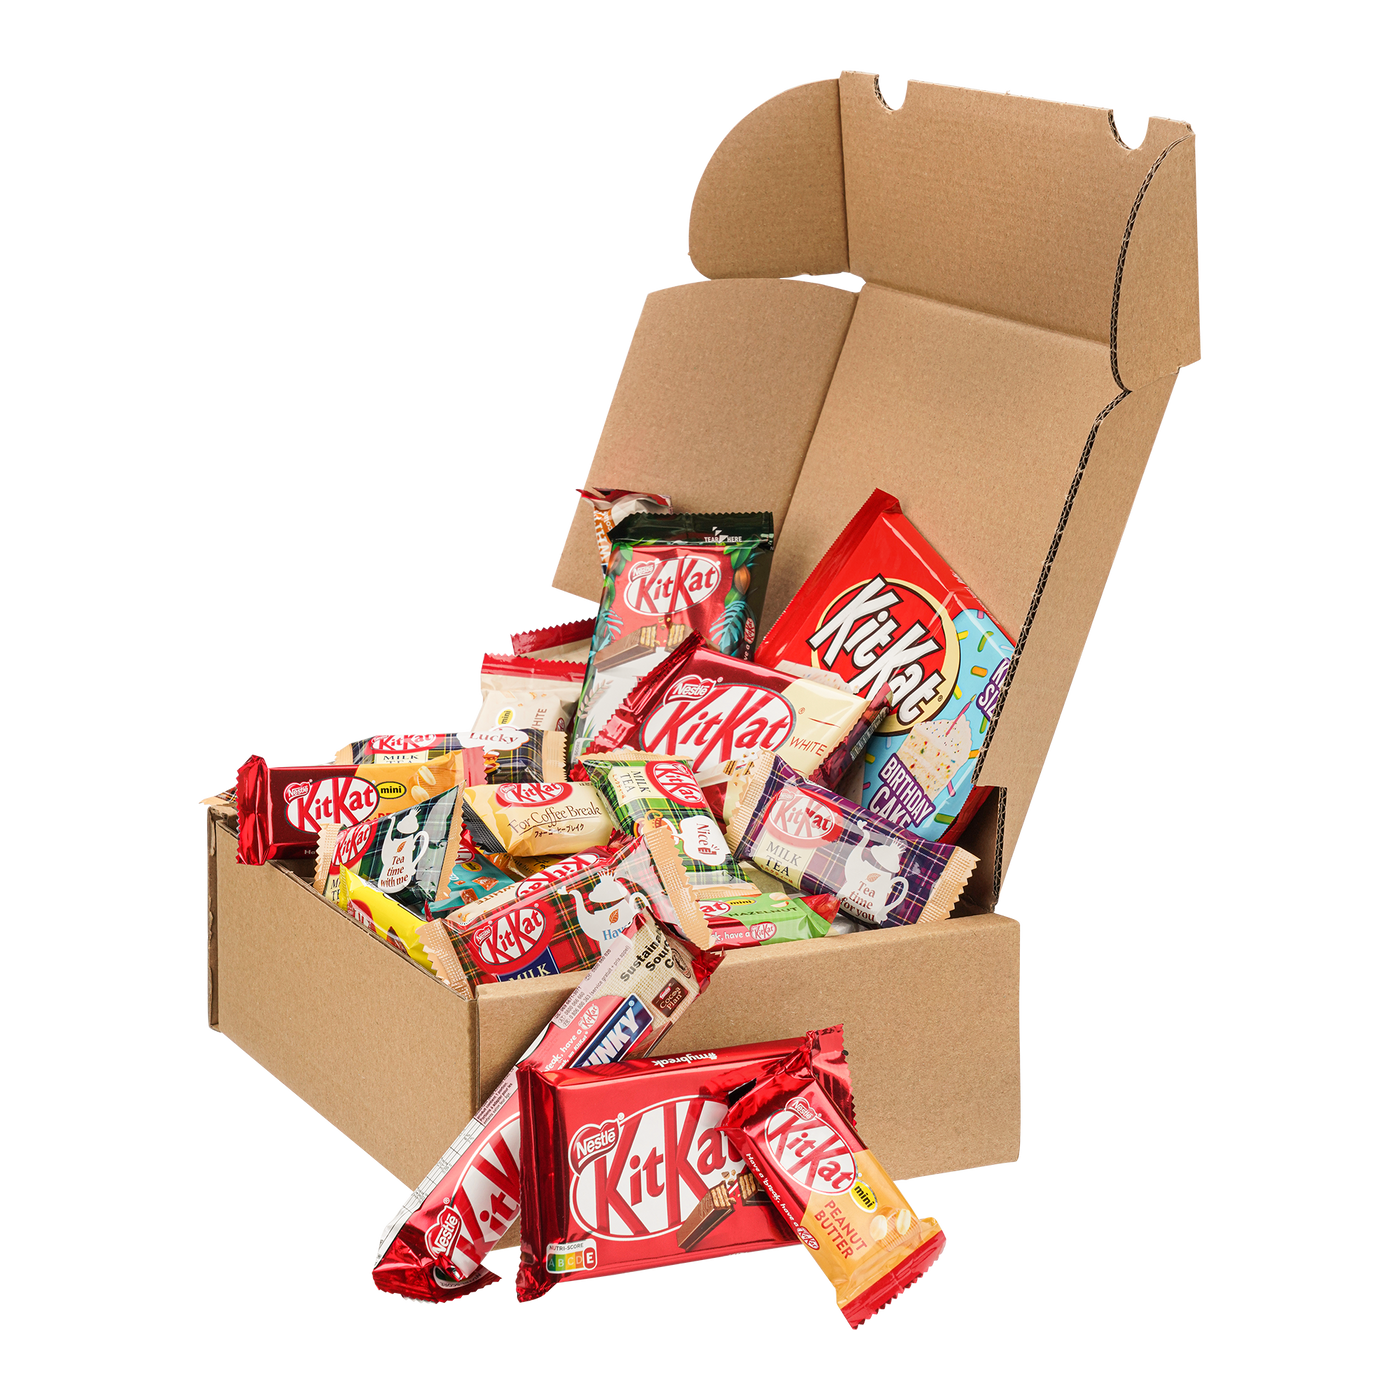 Genussleben Box mit 500g KitKat im Mix